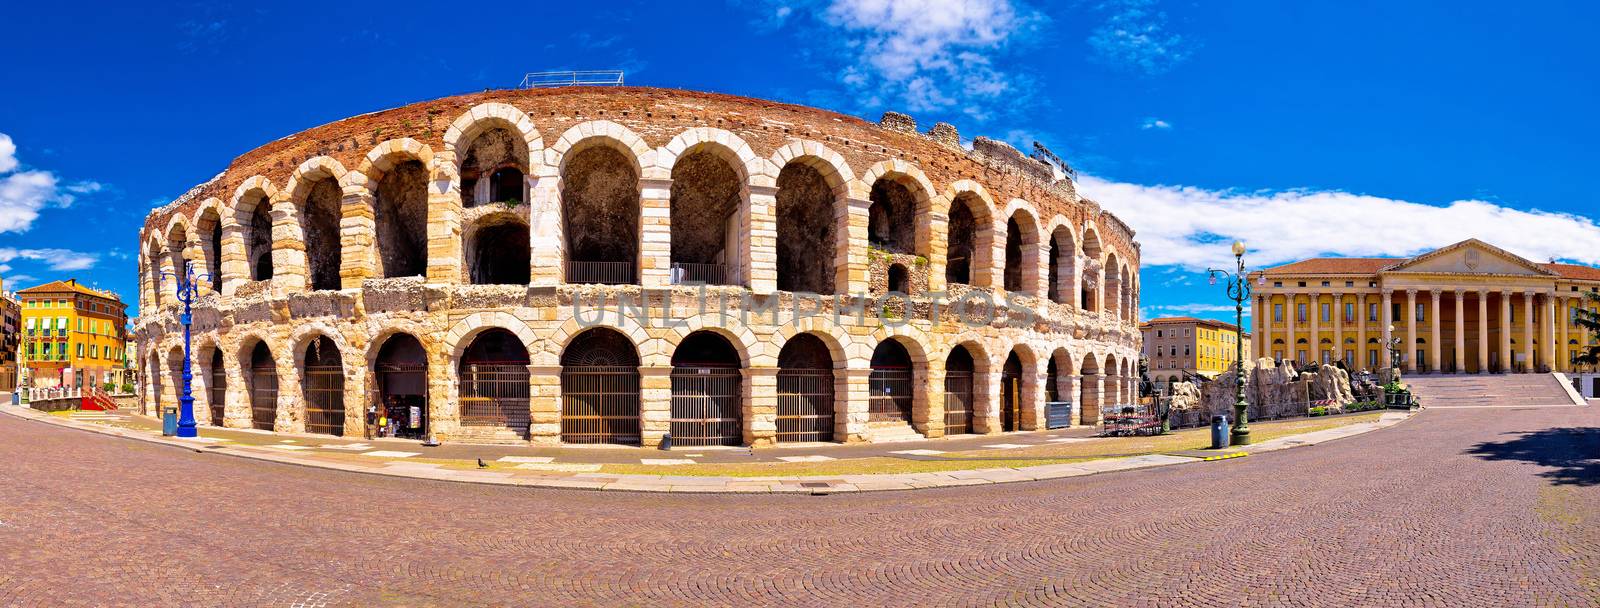 Roman amphitheatre Arena di Verona and Piazza Bra square panoram by xbrchx